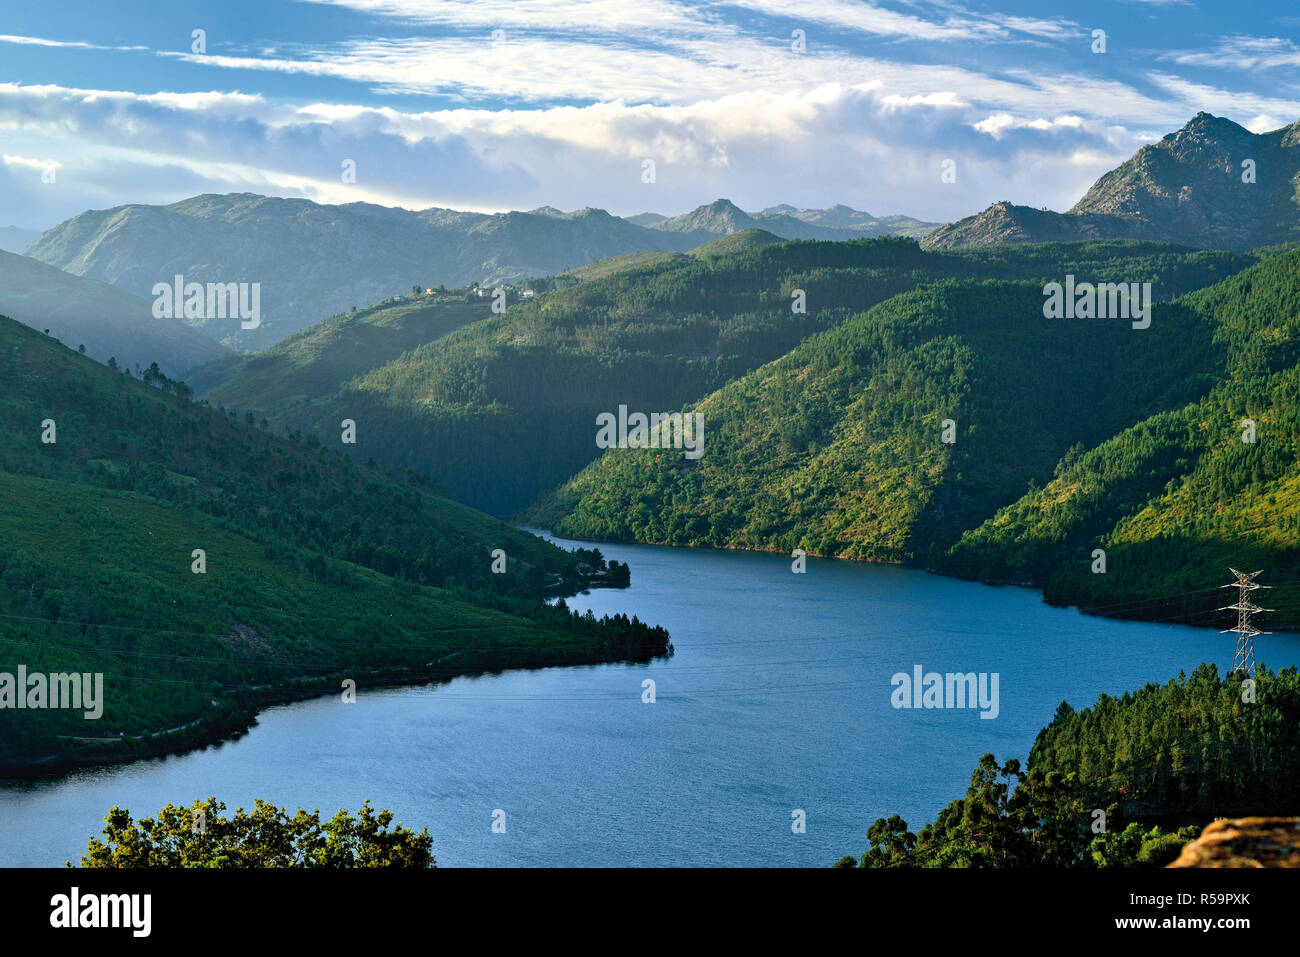 Vue de l'idyllique lac entouré de montagnes vertes avec des ciel nuageux Banque D'Images